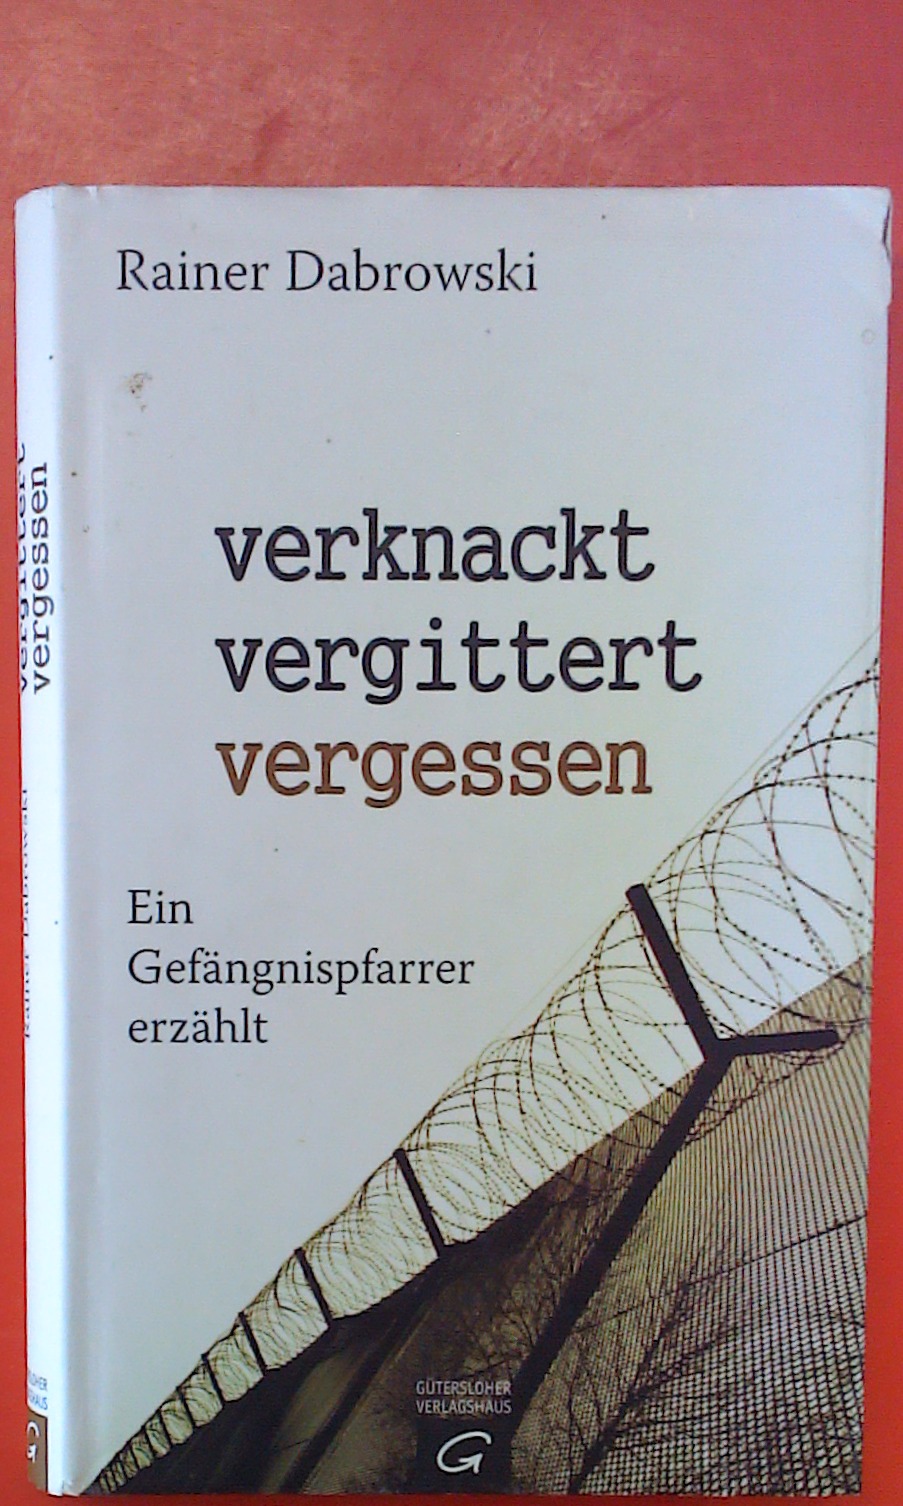 verknackt-vergittert-vergessen - Ein Gefängnispfarrer erzählt. 1. Auflage. - Rainer Dabrowski